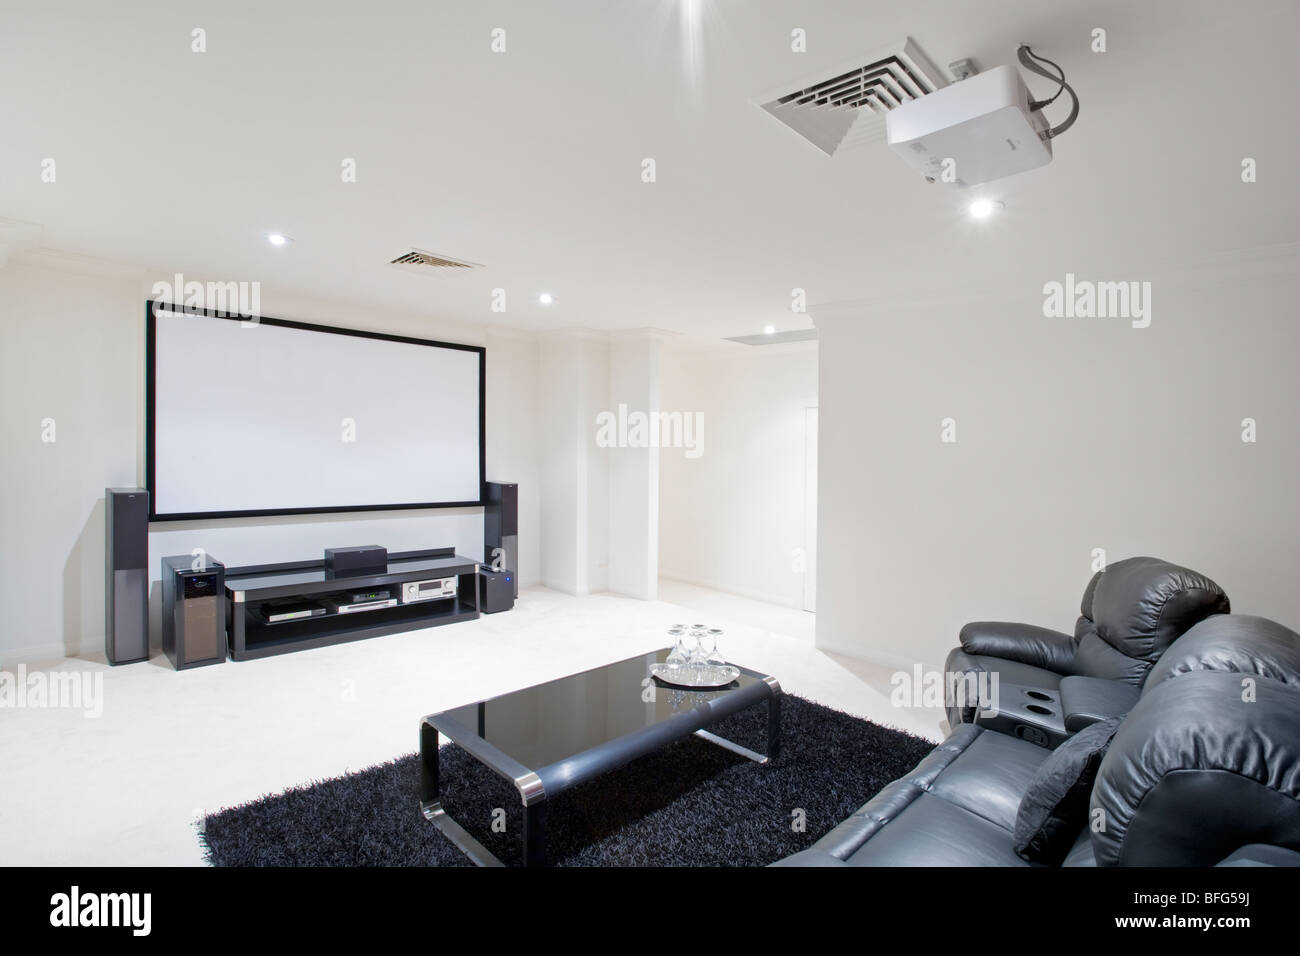 Heimkino-Raum mit schwarzen Ledersesseln liege, Projektor in Decke und Projektor-Bildschirm auf Wand. Stockfoto